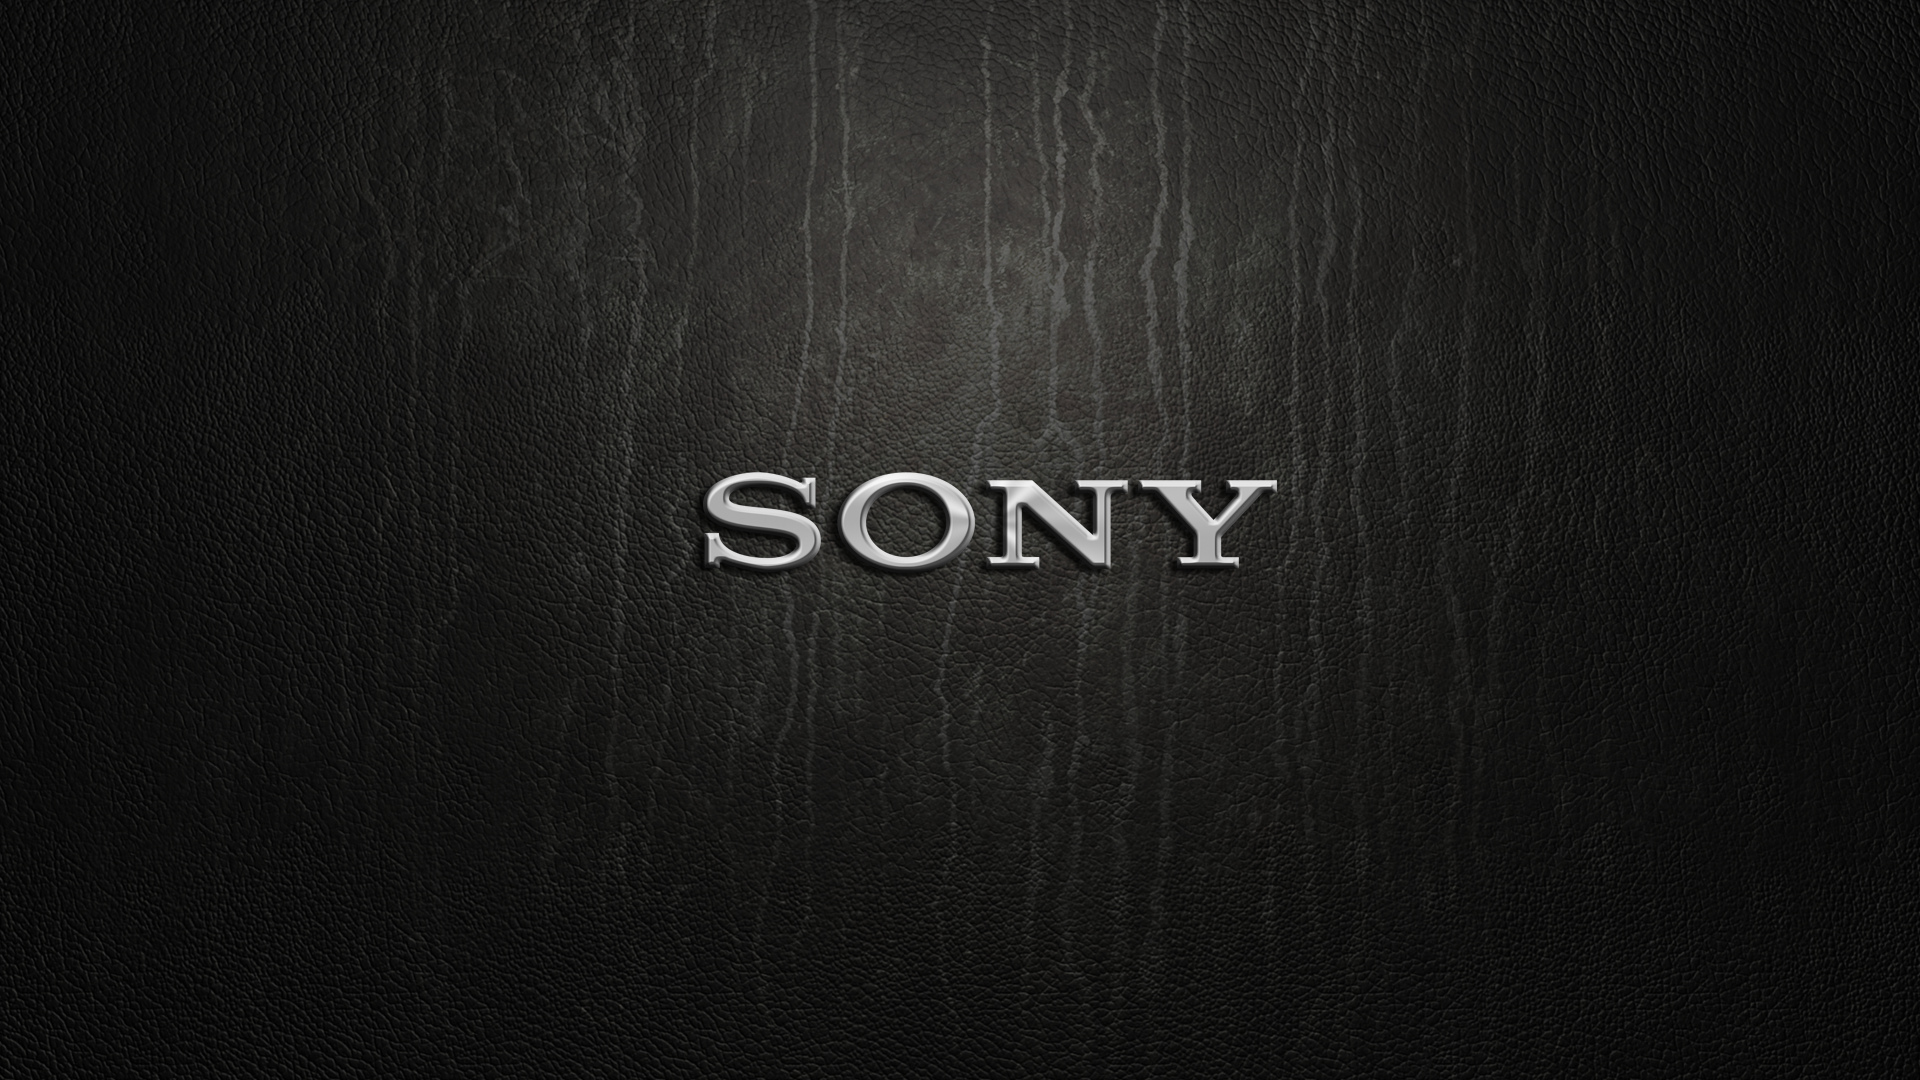 Sony Vaio Logo